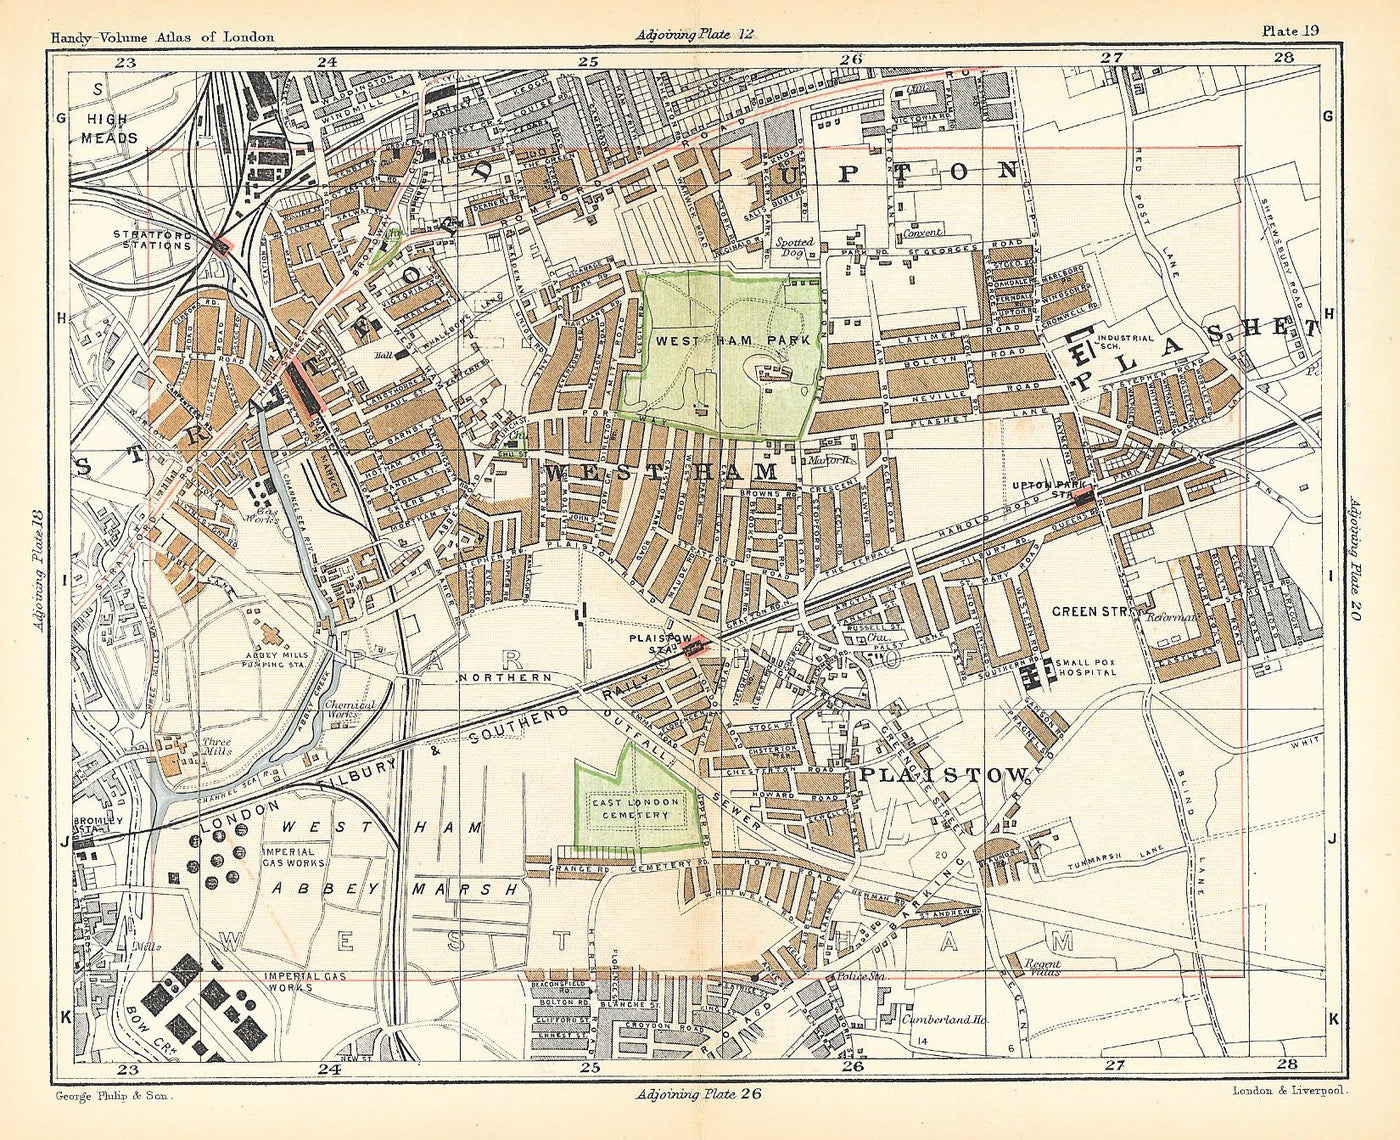 West Ham antique map